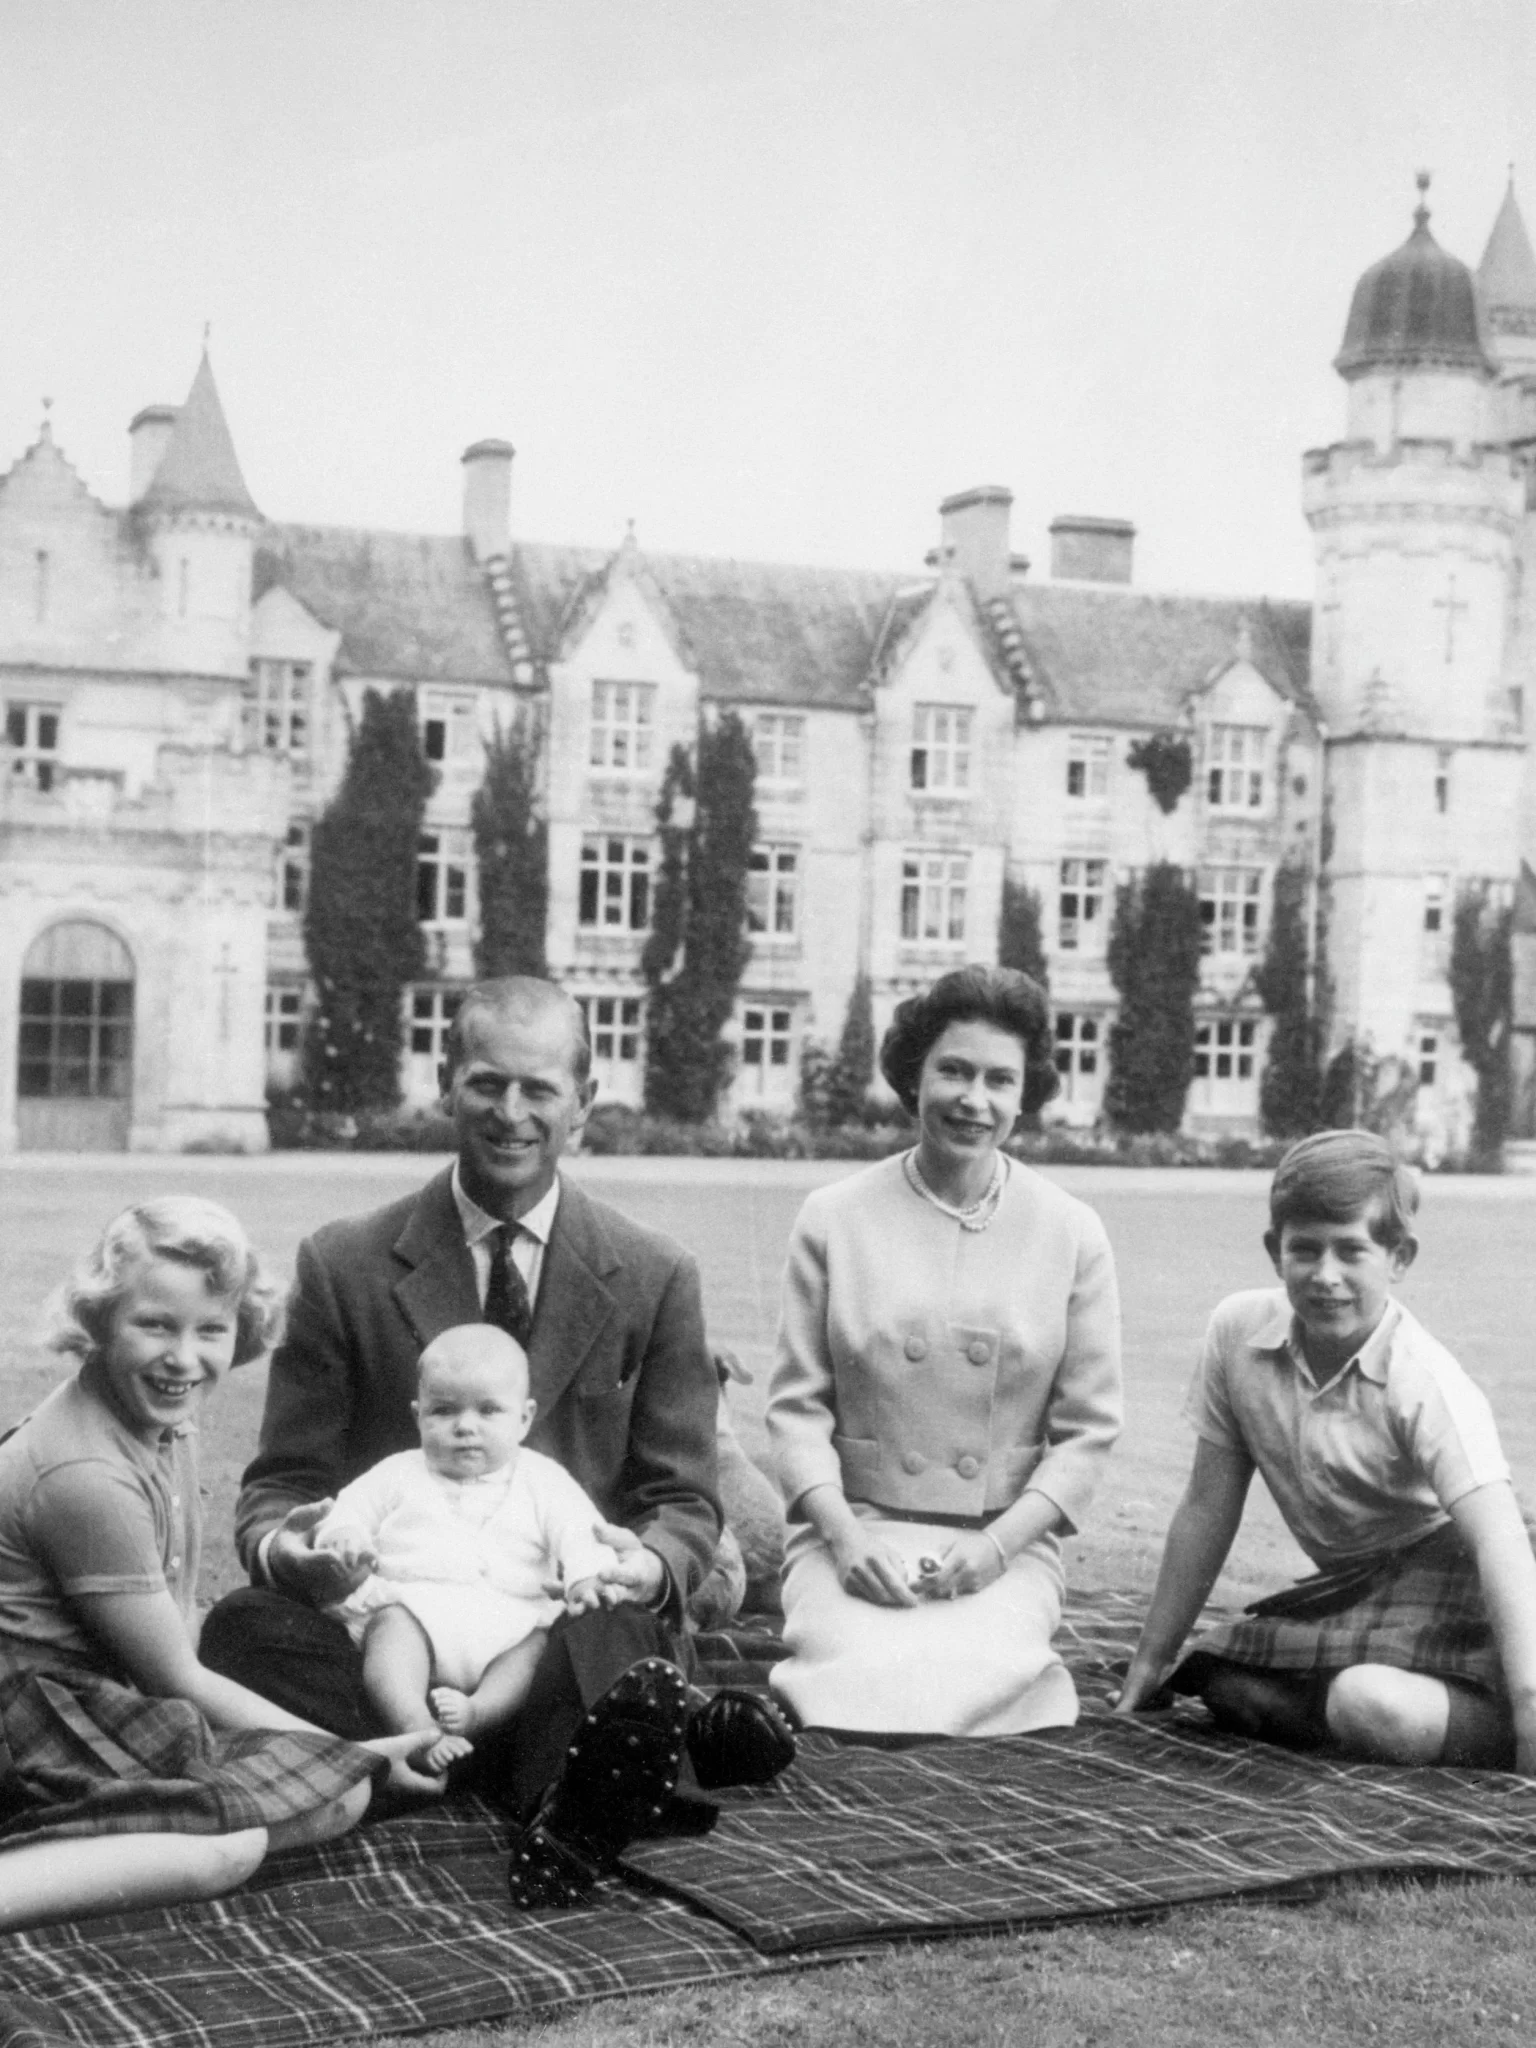 Taking A Look Inside The Balmoral Castle - Queen Elizabeth II's Summer Retreat